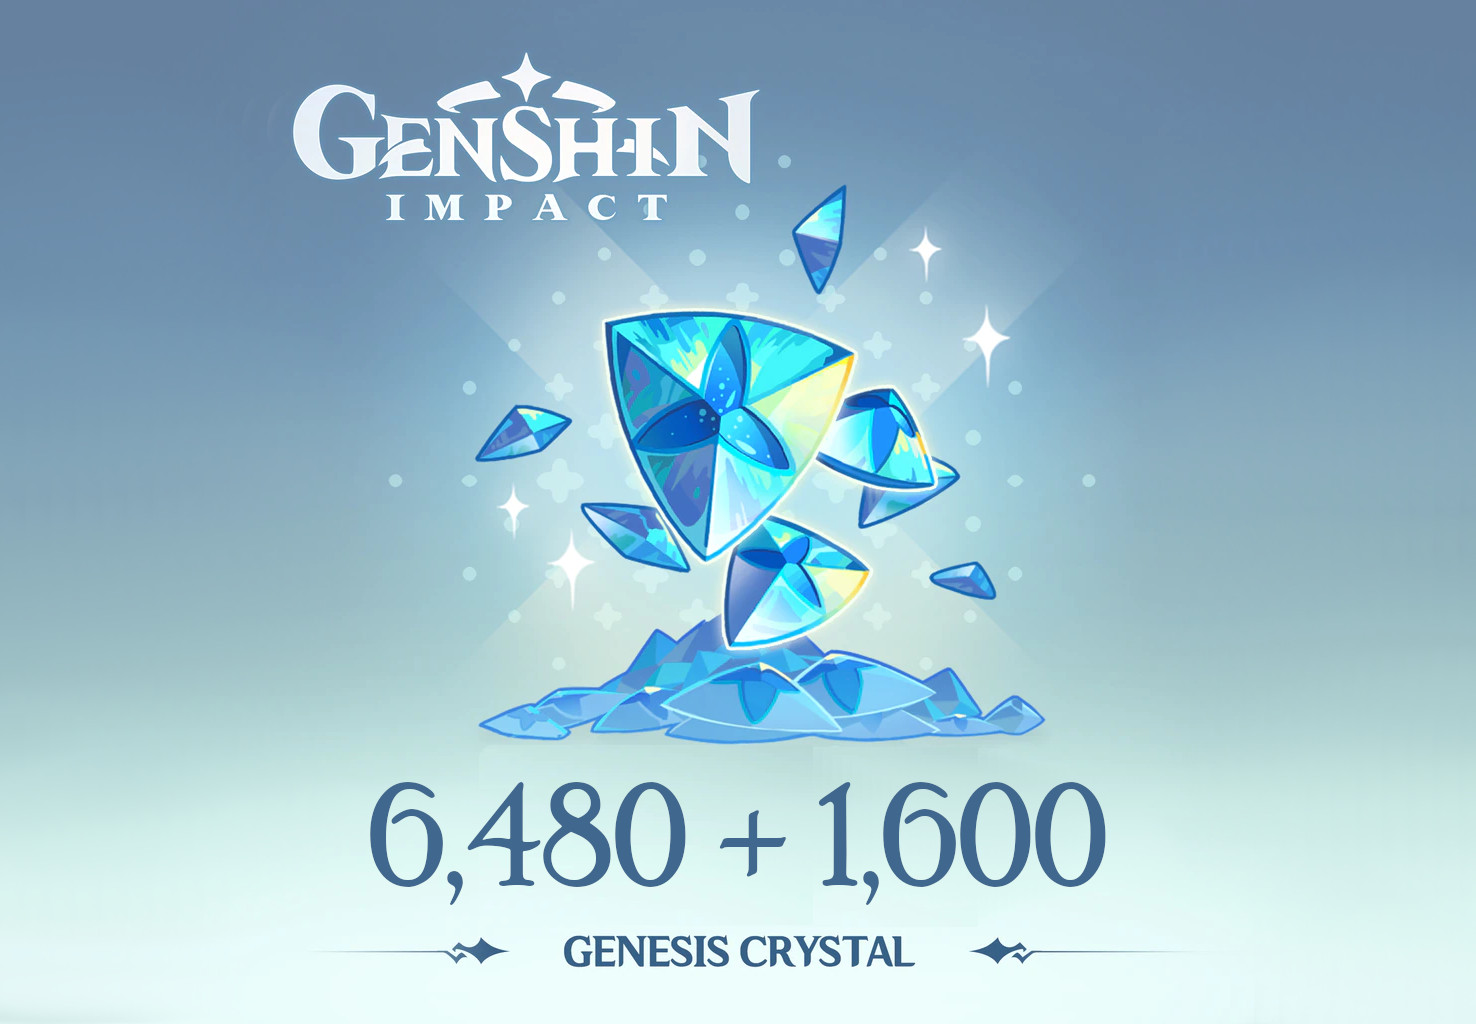 Genshin Impact - 6,480 + 1,600 Genesis Crystals Reidos Voucher